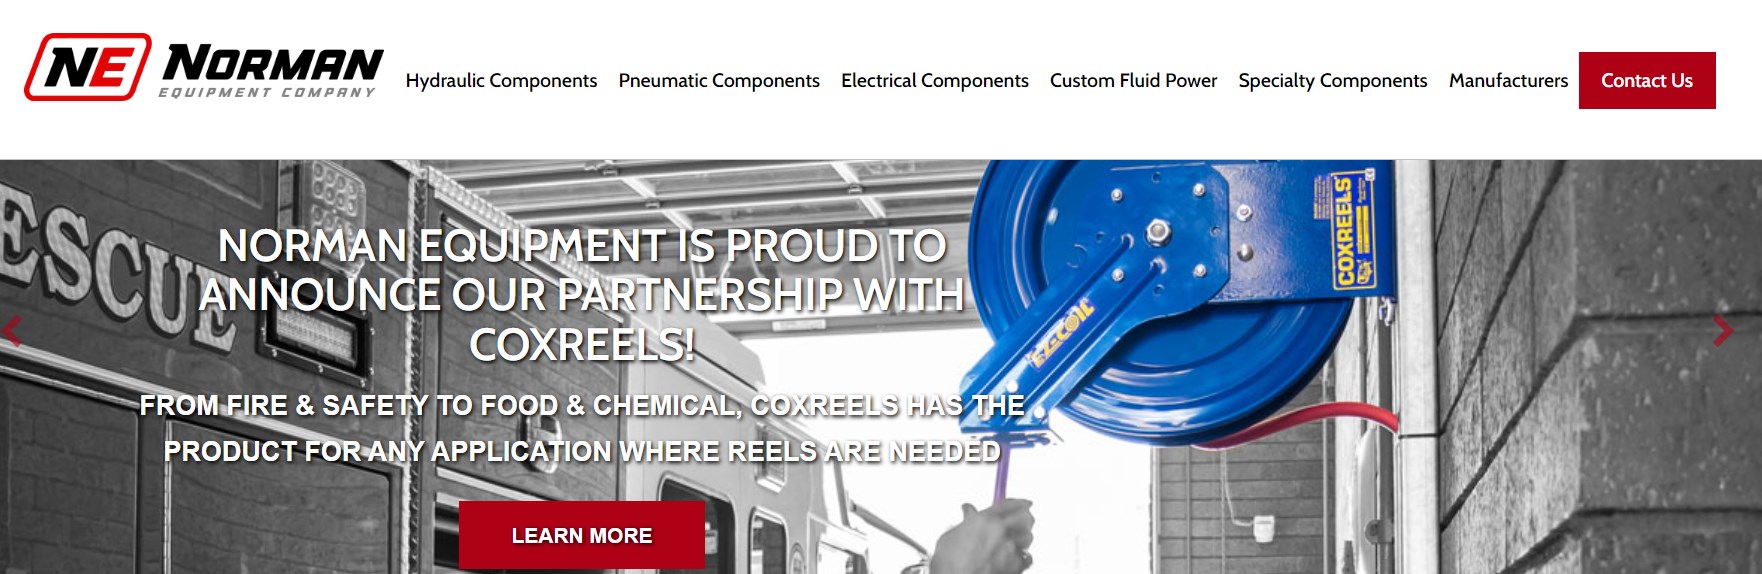 NORMAN Hydraulic Parts machine manufacturer brands